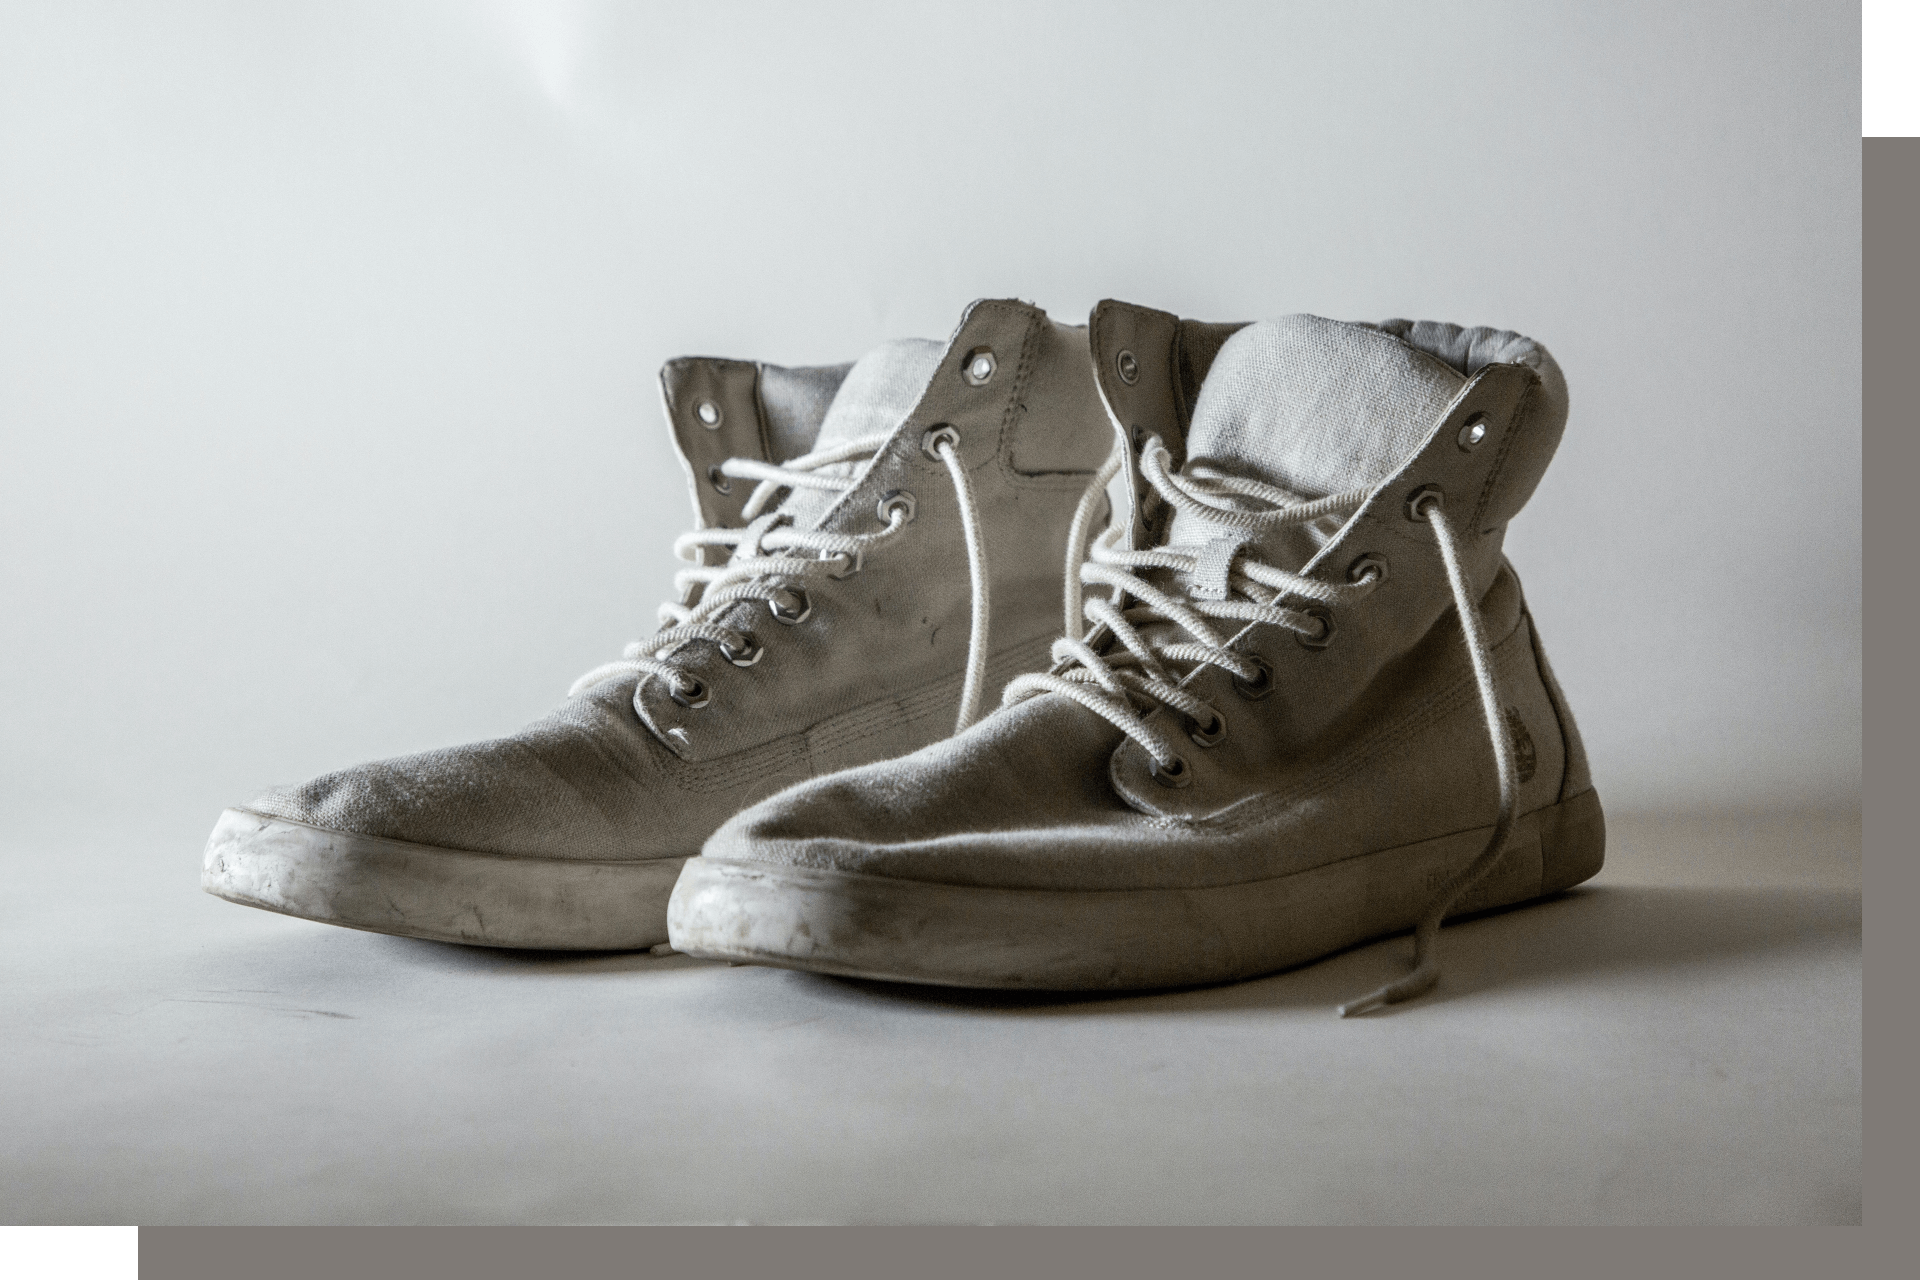 Kano verbinding verbroken Evolueren Versleten schoenen | SHUZ Blog